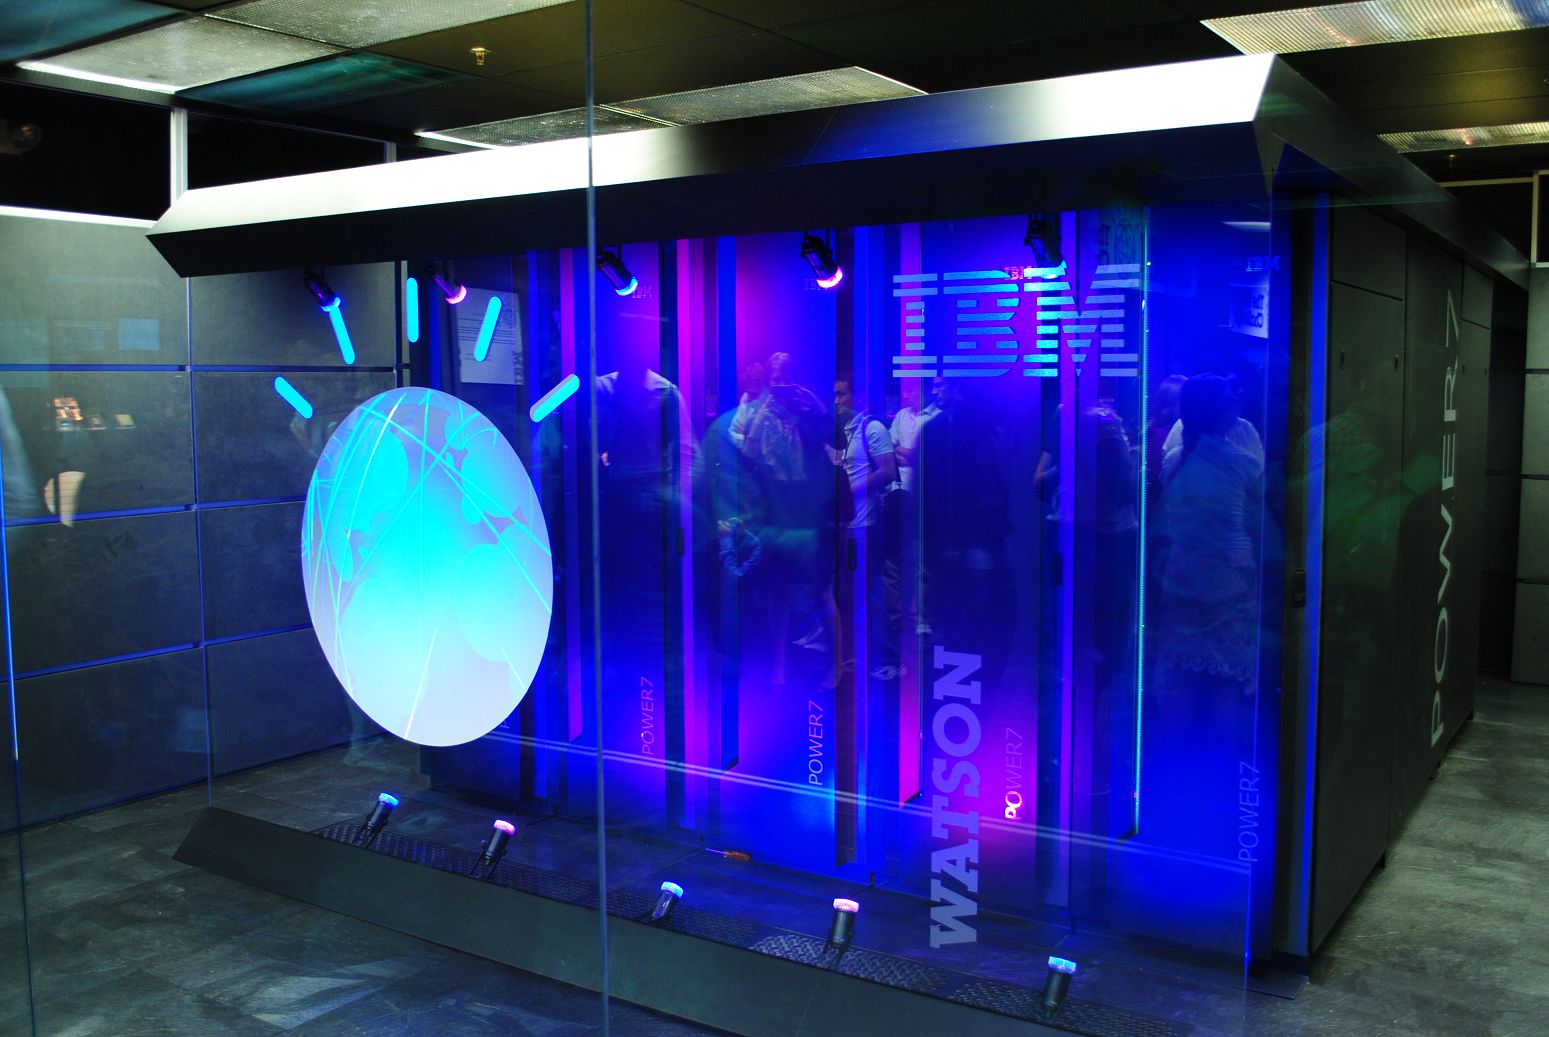 IBM Watson MD